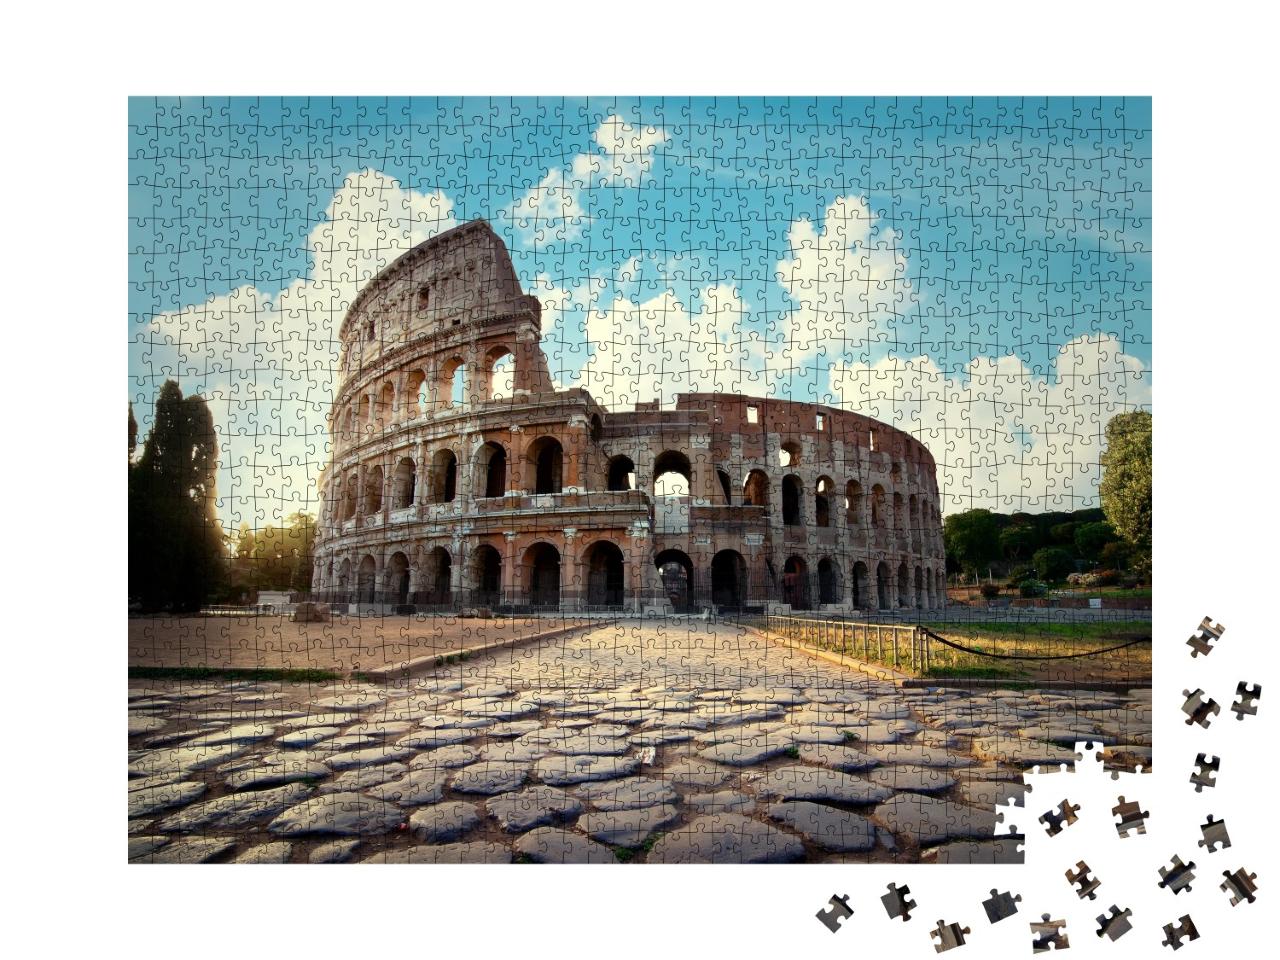 Puzzle de 1000 pièces « Colisée de Rome l'après-midi »